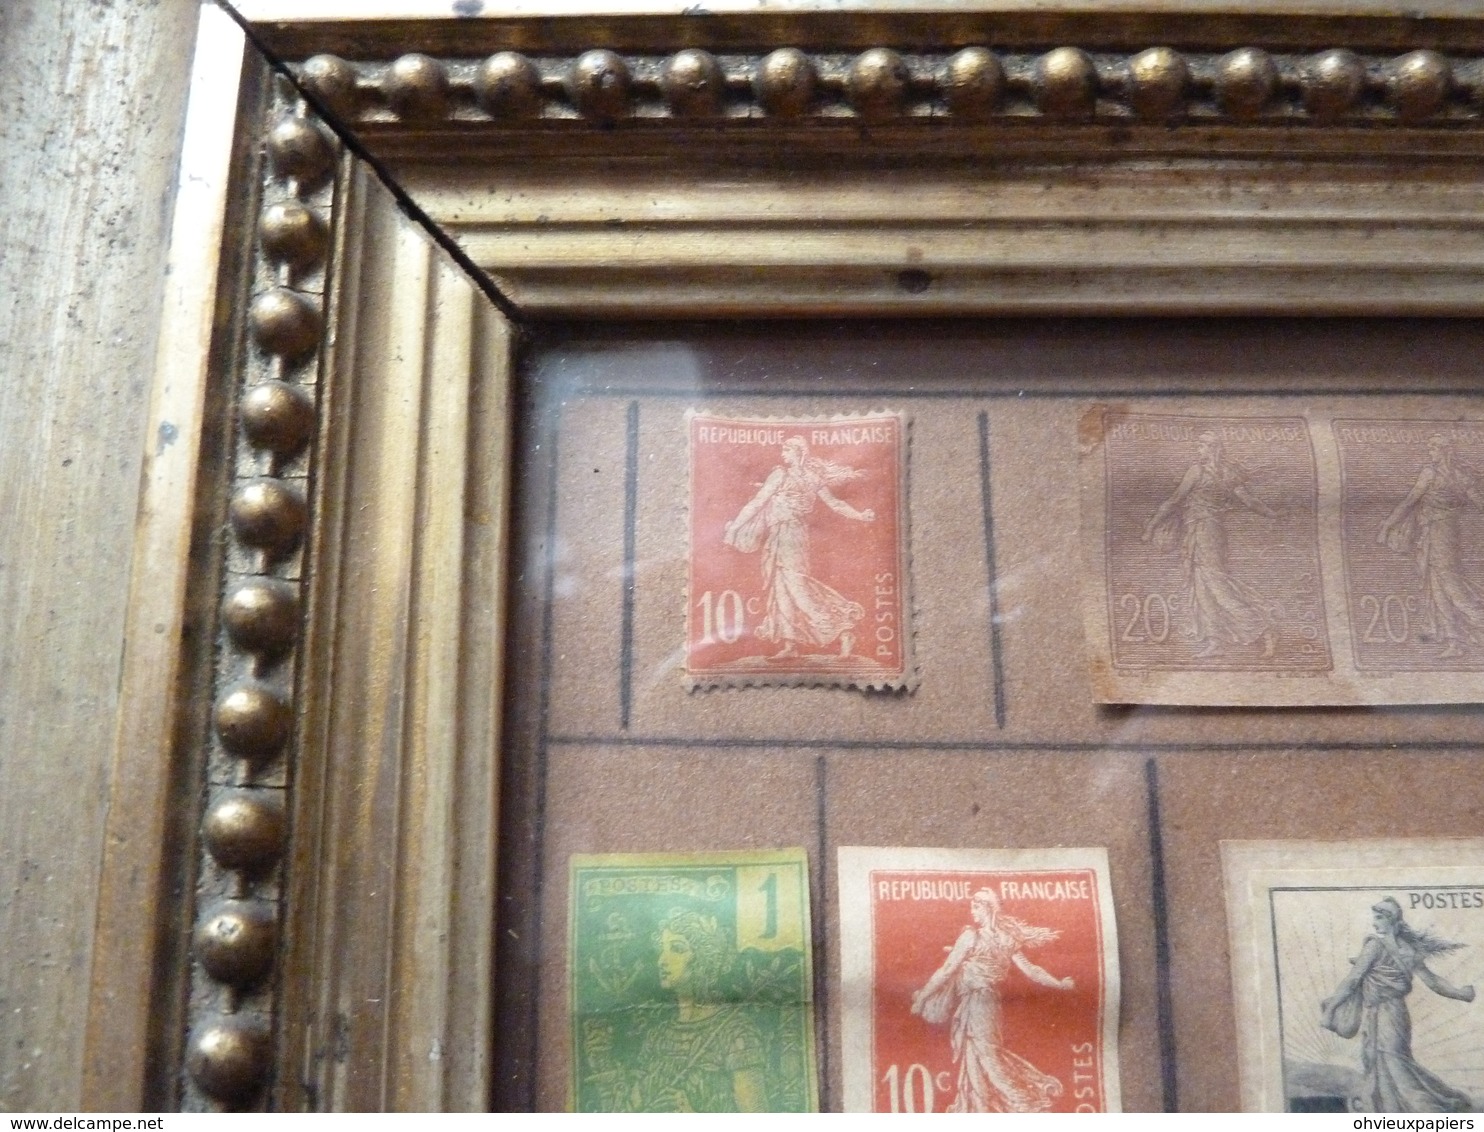 18 timbres essais du timbre poste  LA SEMEUSE  par  OSCAR ROTY et LOUIS EUGENE MOUCHON  vers 1900